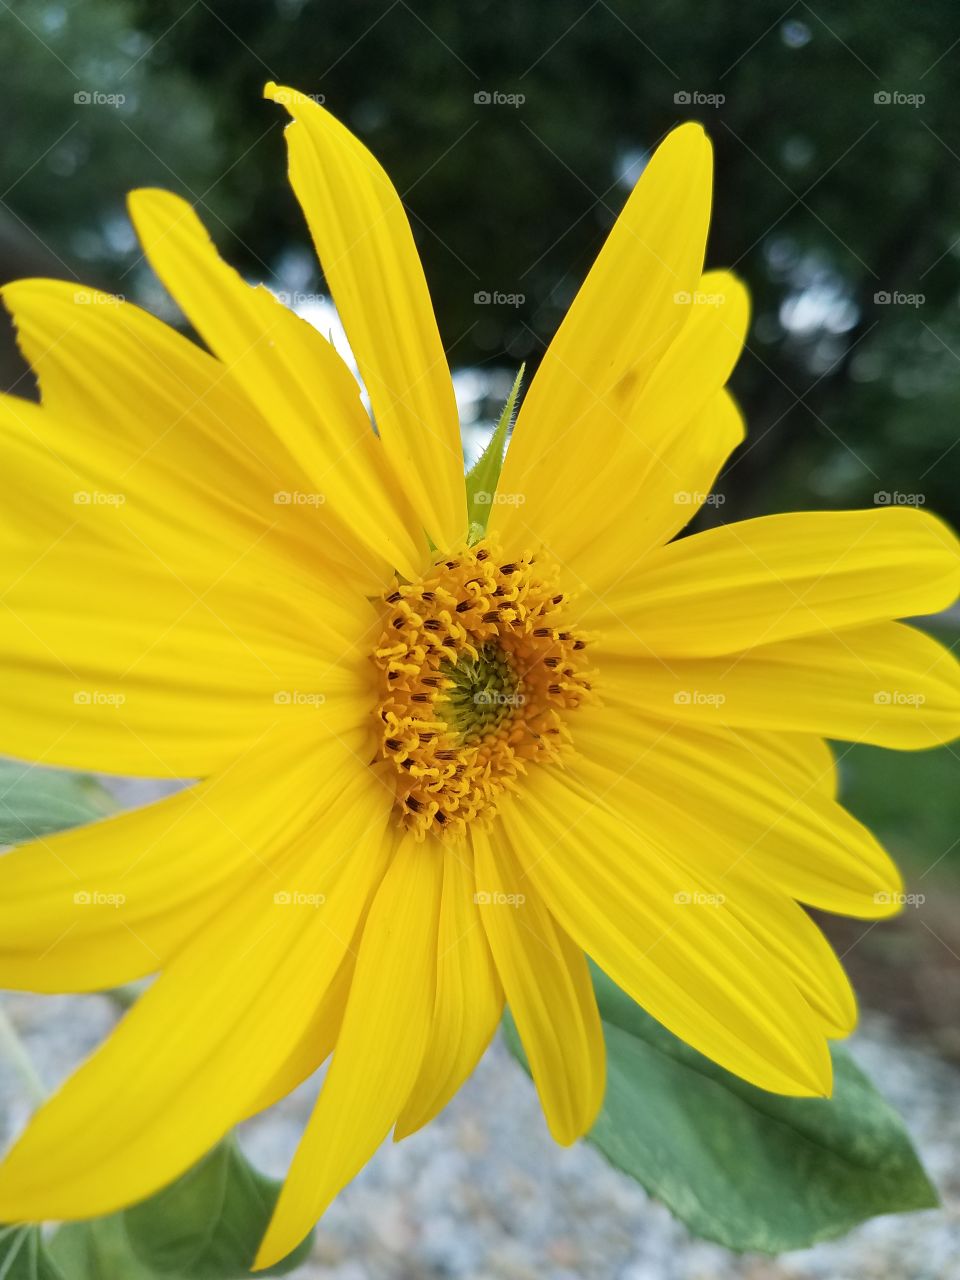 beautiful close up yellow flower